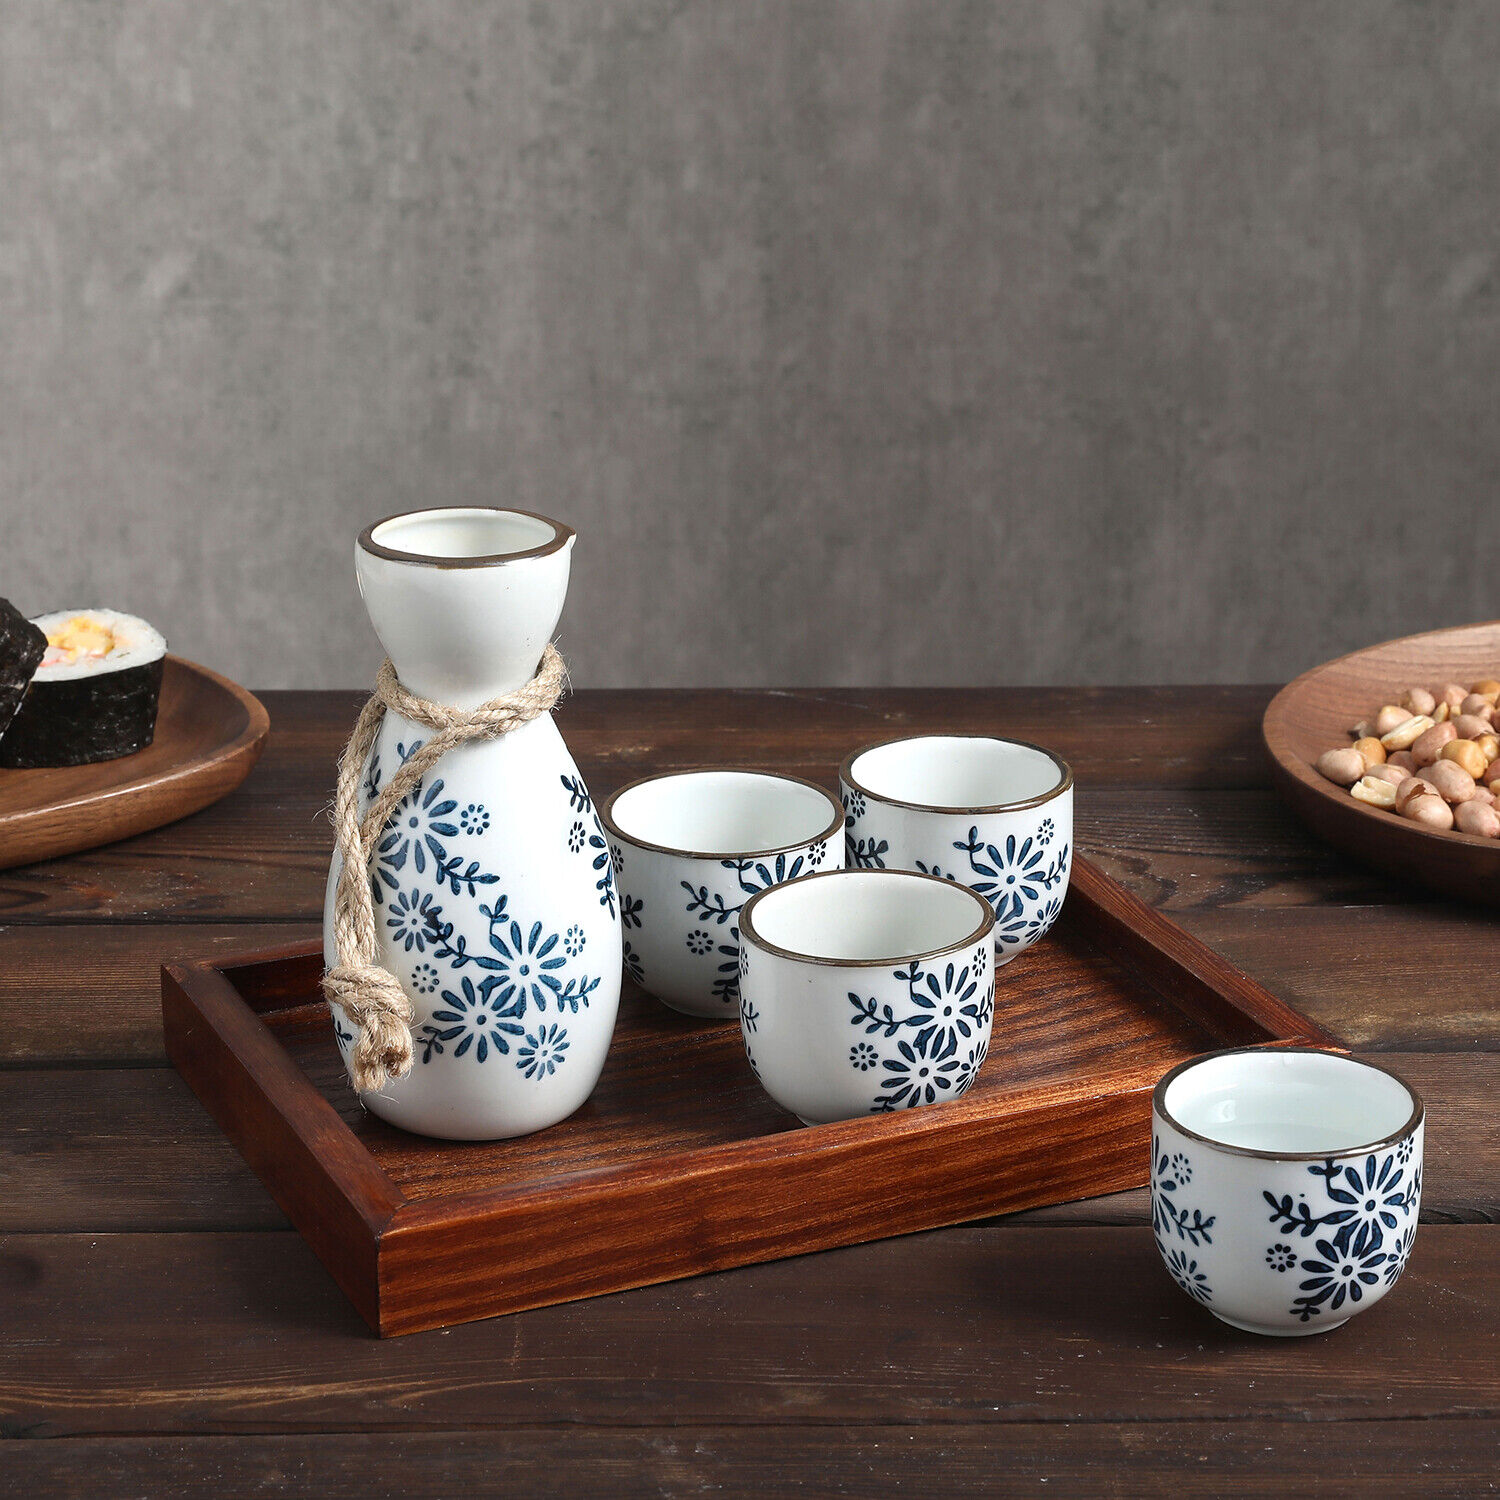 6-Piece Japanese Traditional Blue Floral Pattern White Ceramic Sake Serving Set